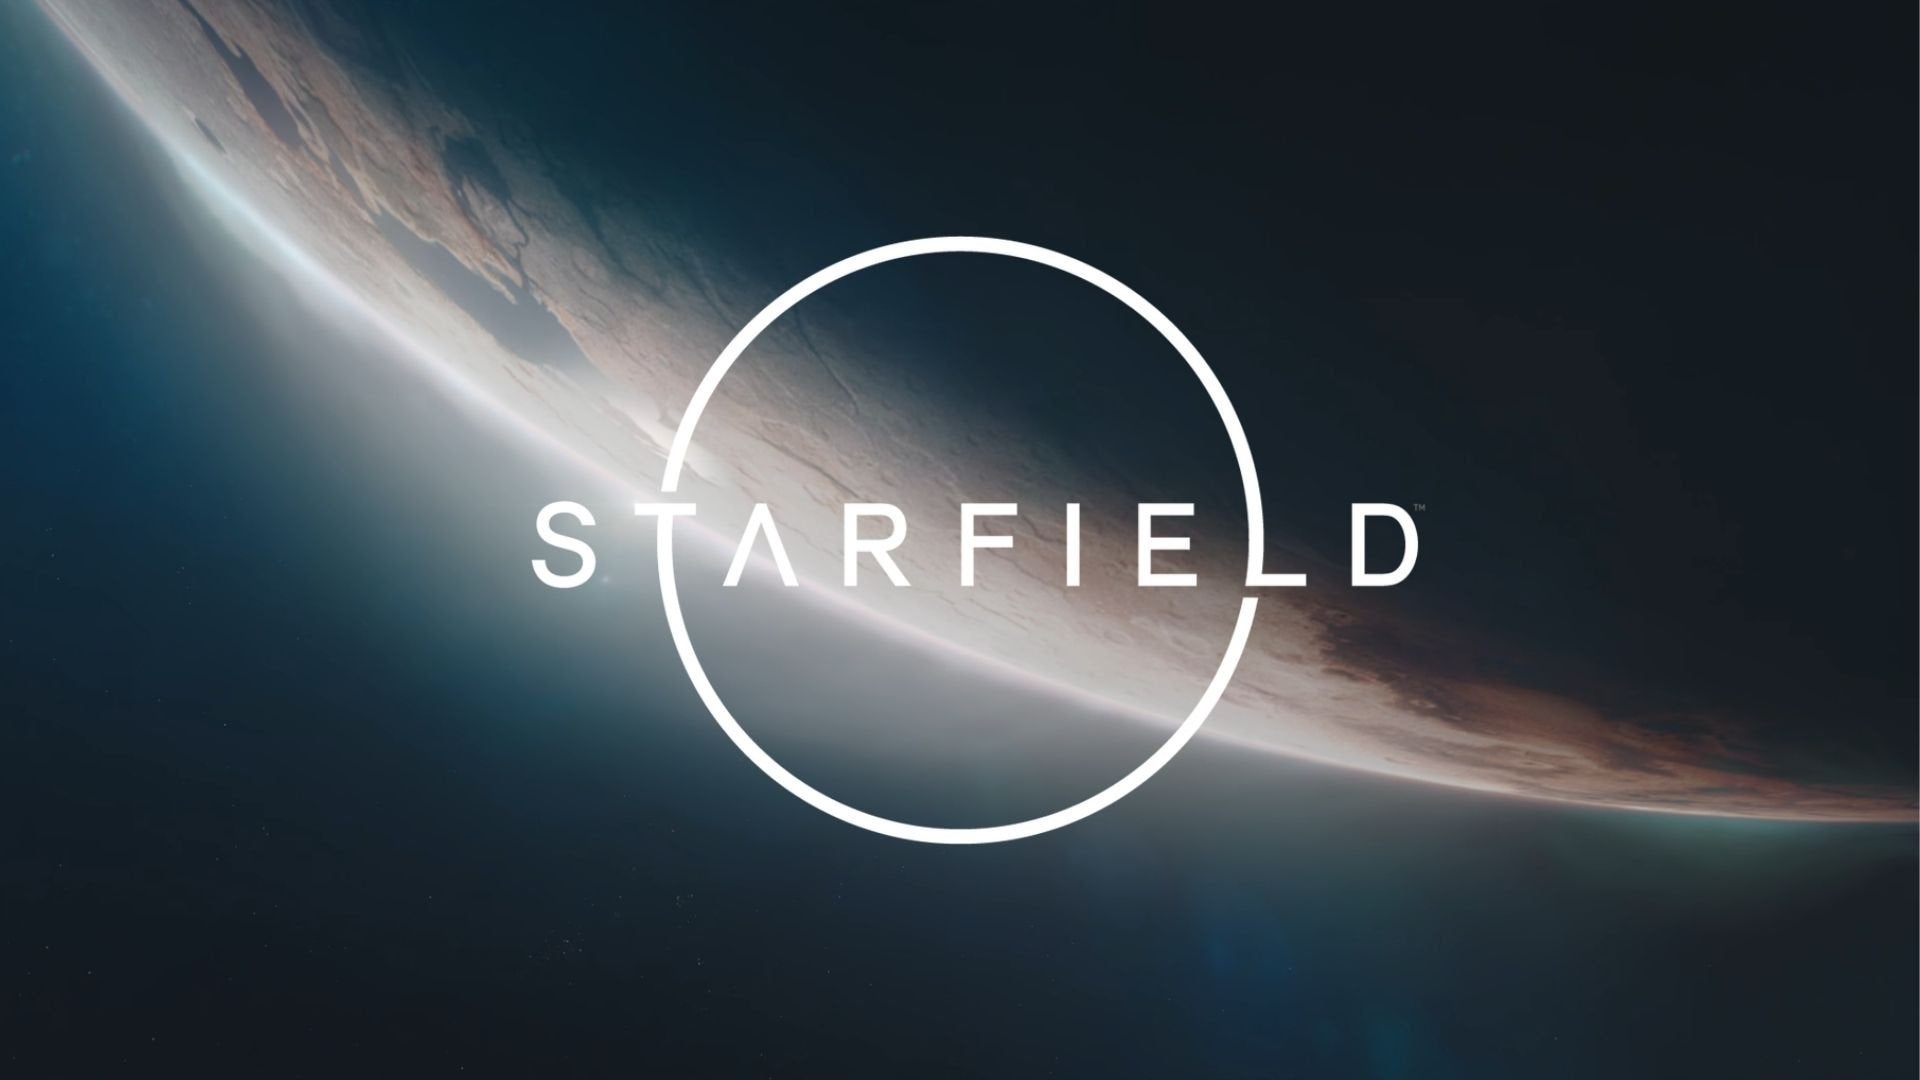 Ролевая игра Starfield от Bethesda выйдет 11 ноября 2022 года. Есть трейлер